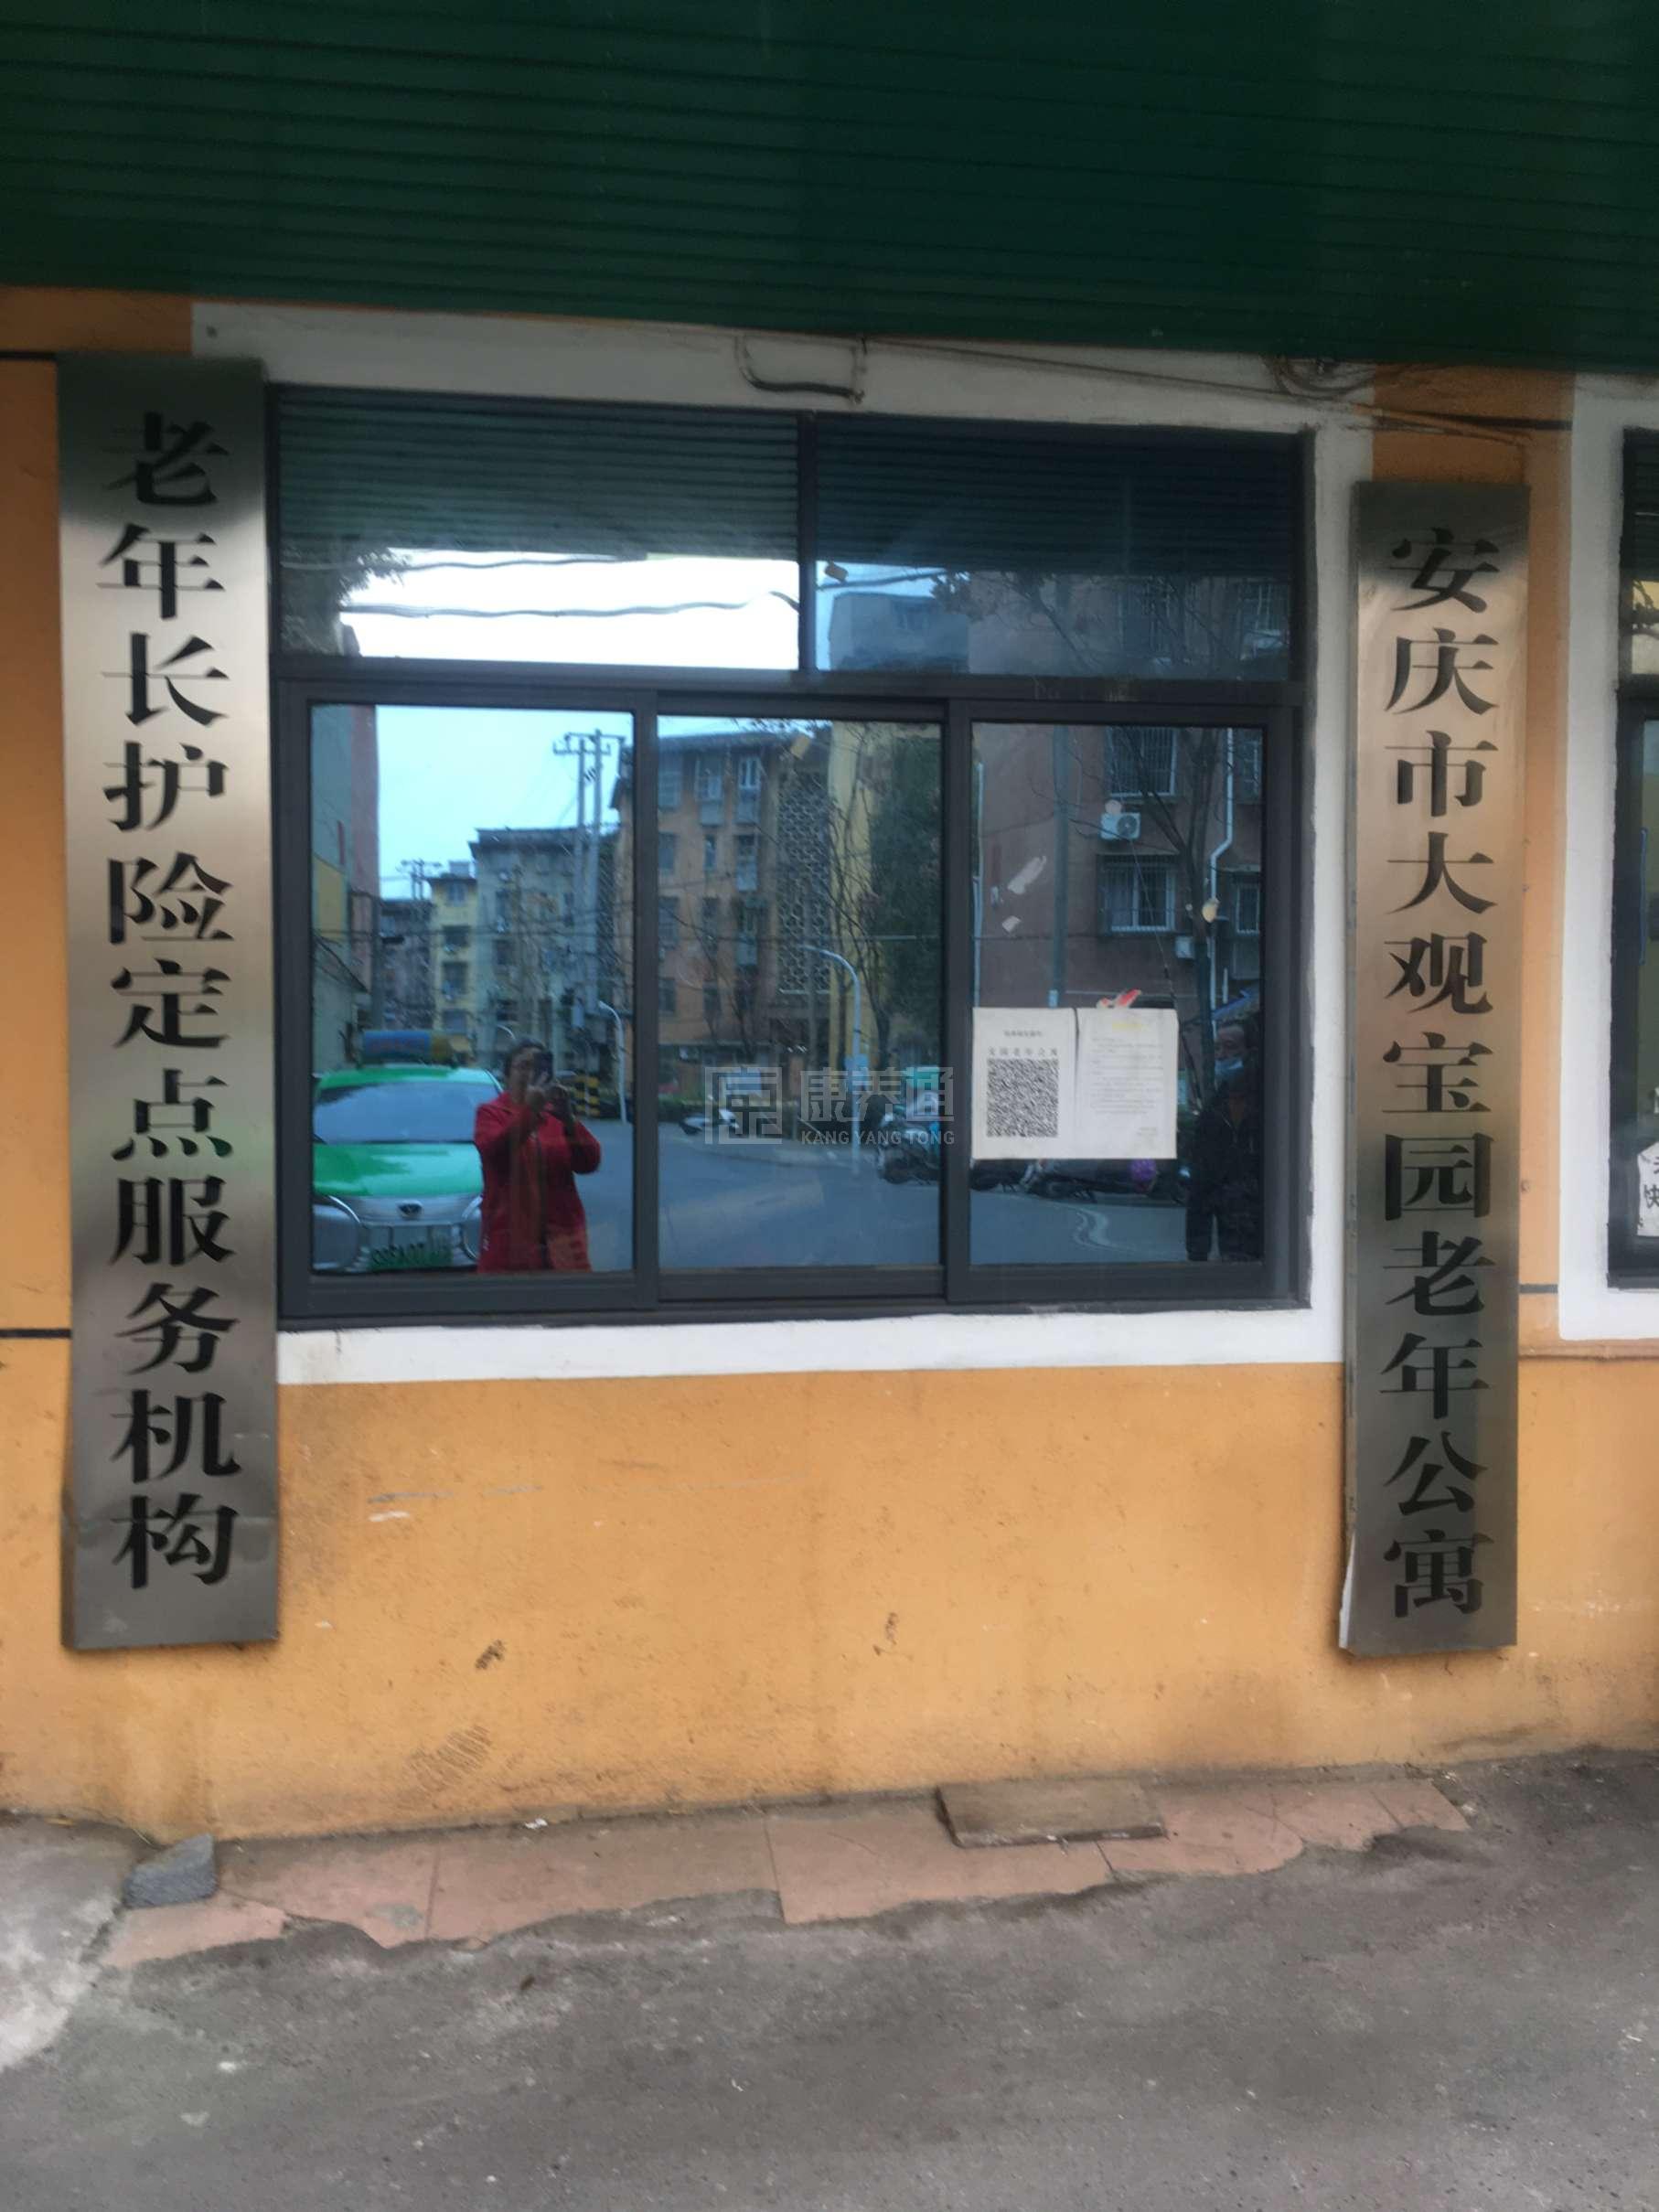 安庆市大观区宝园老年公寓环境图-餐台